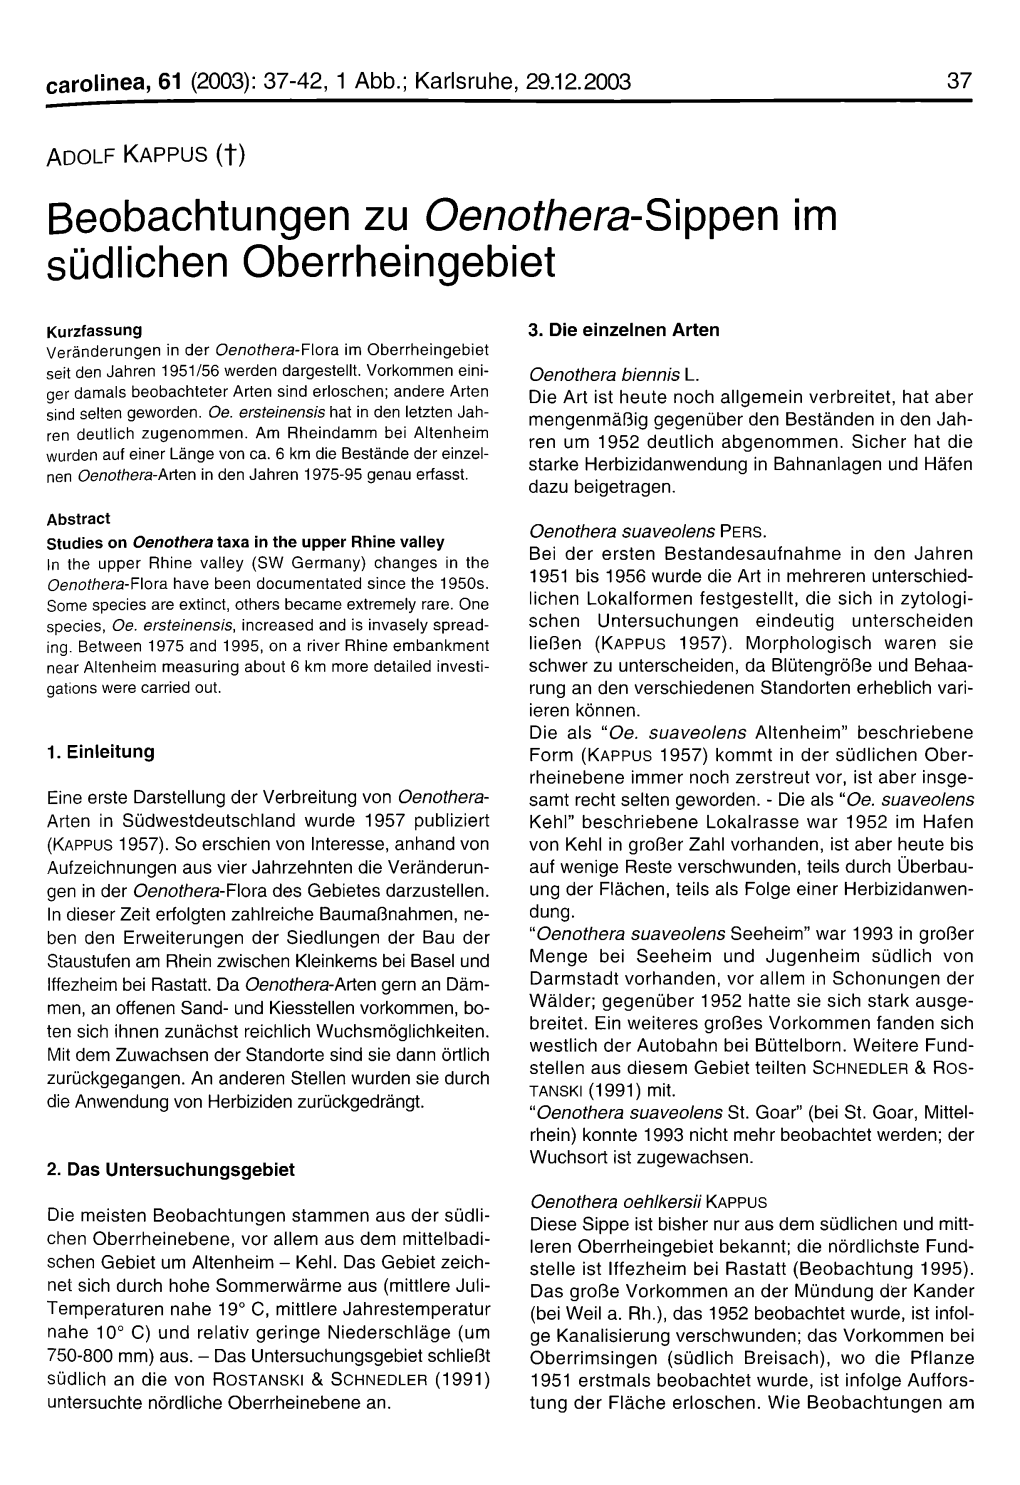 Beobachtungen Zu Oenothera-S'vppen Im Südlichen Oberrheingebiet